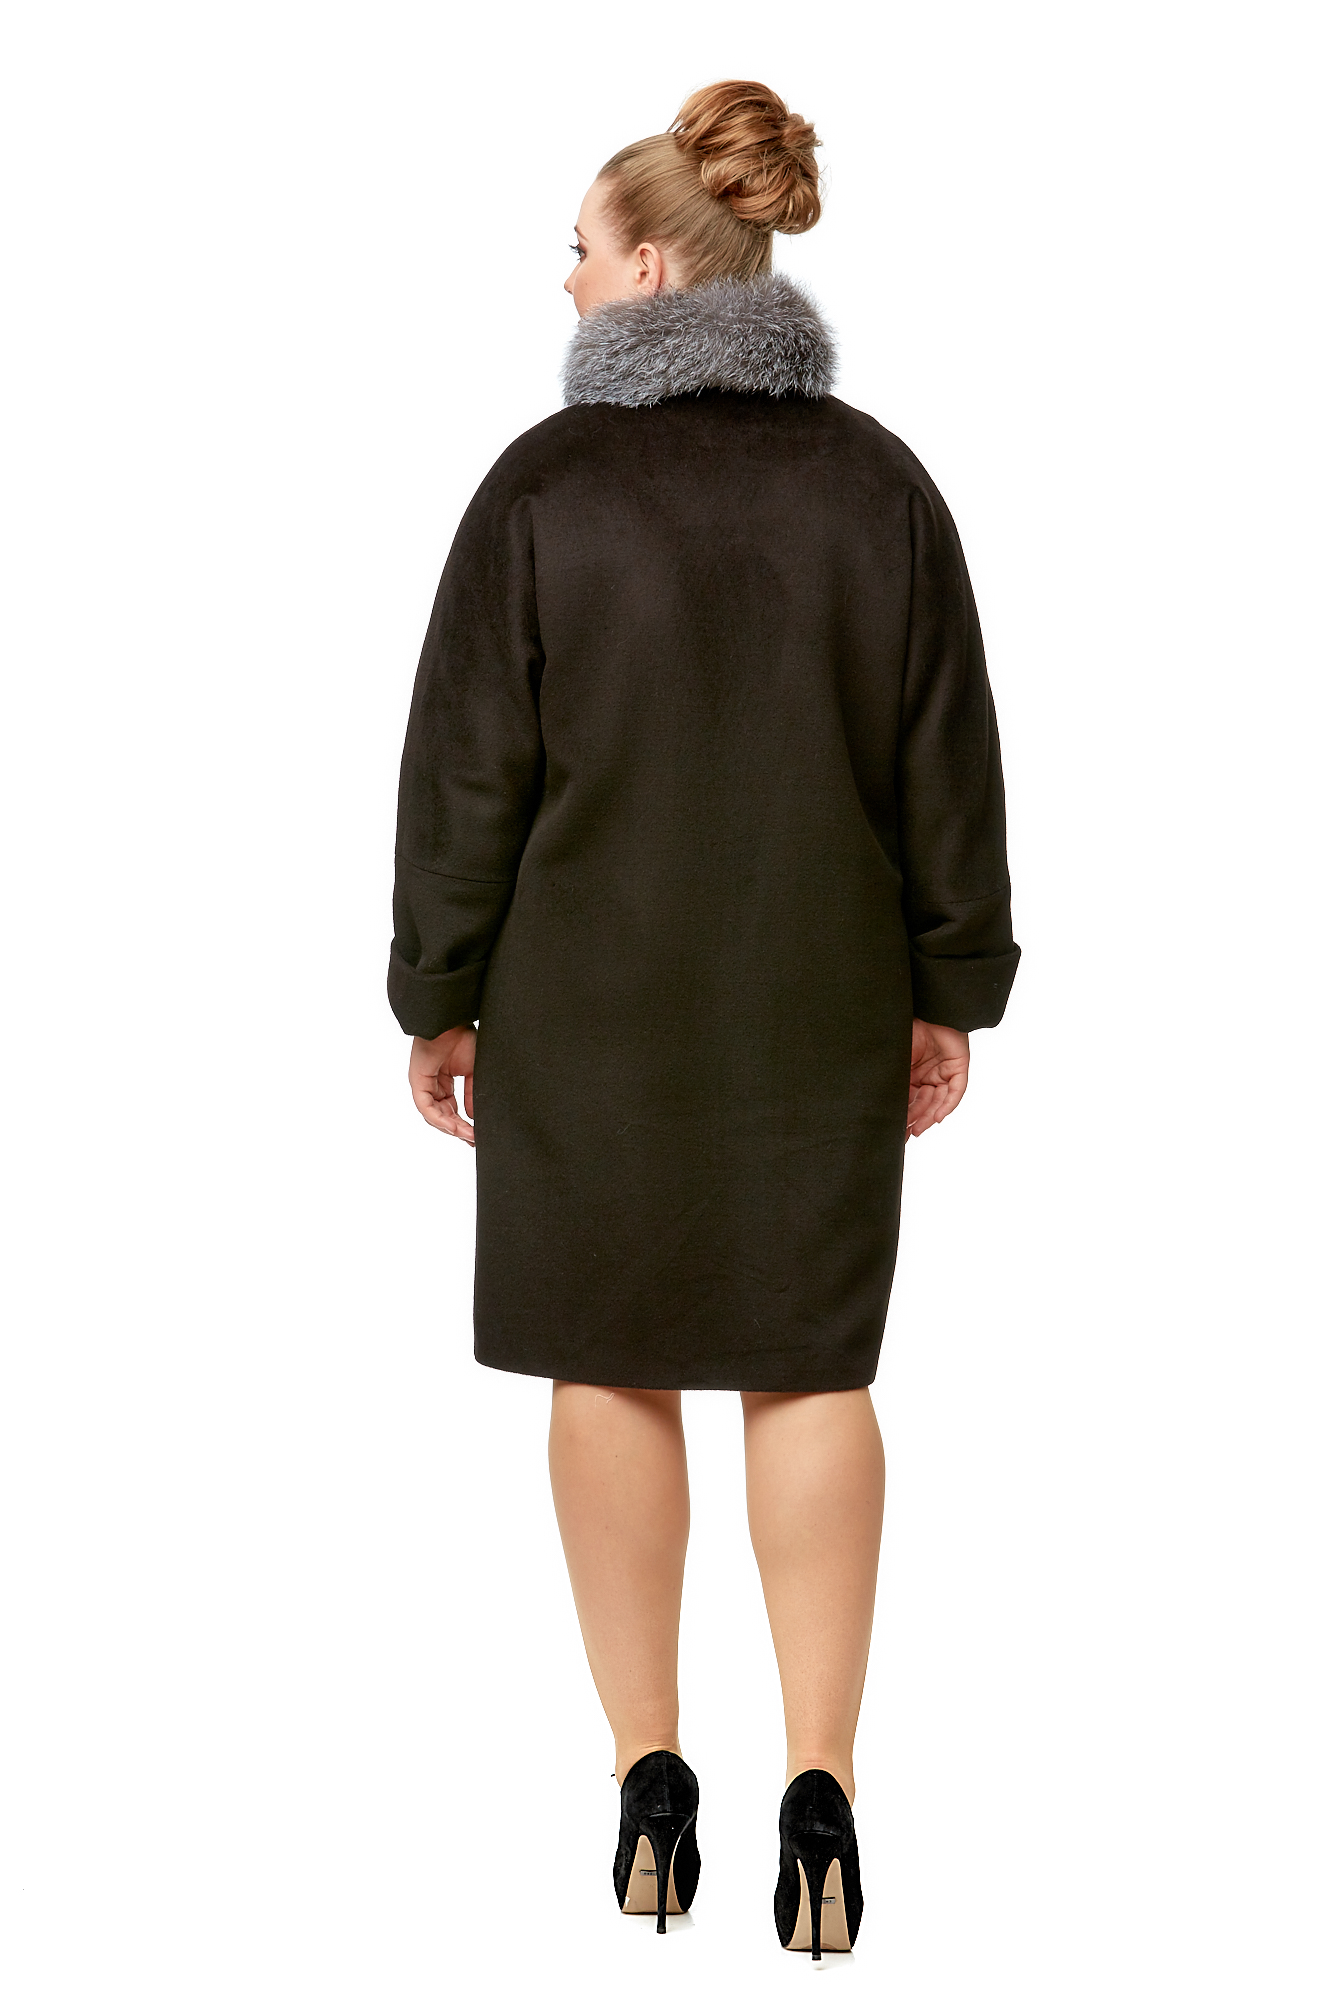 Женское пальто из текстиля с воротником, отделка блюфрост 8009898-3